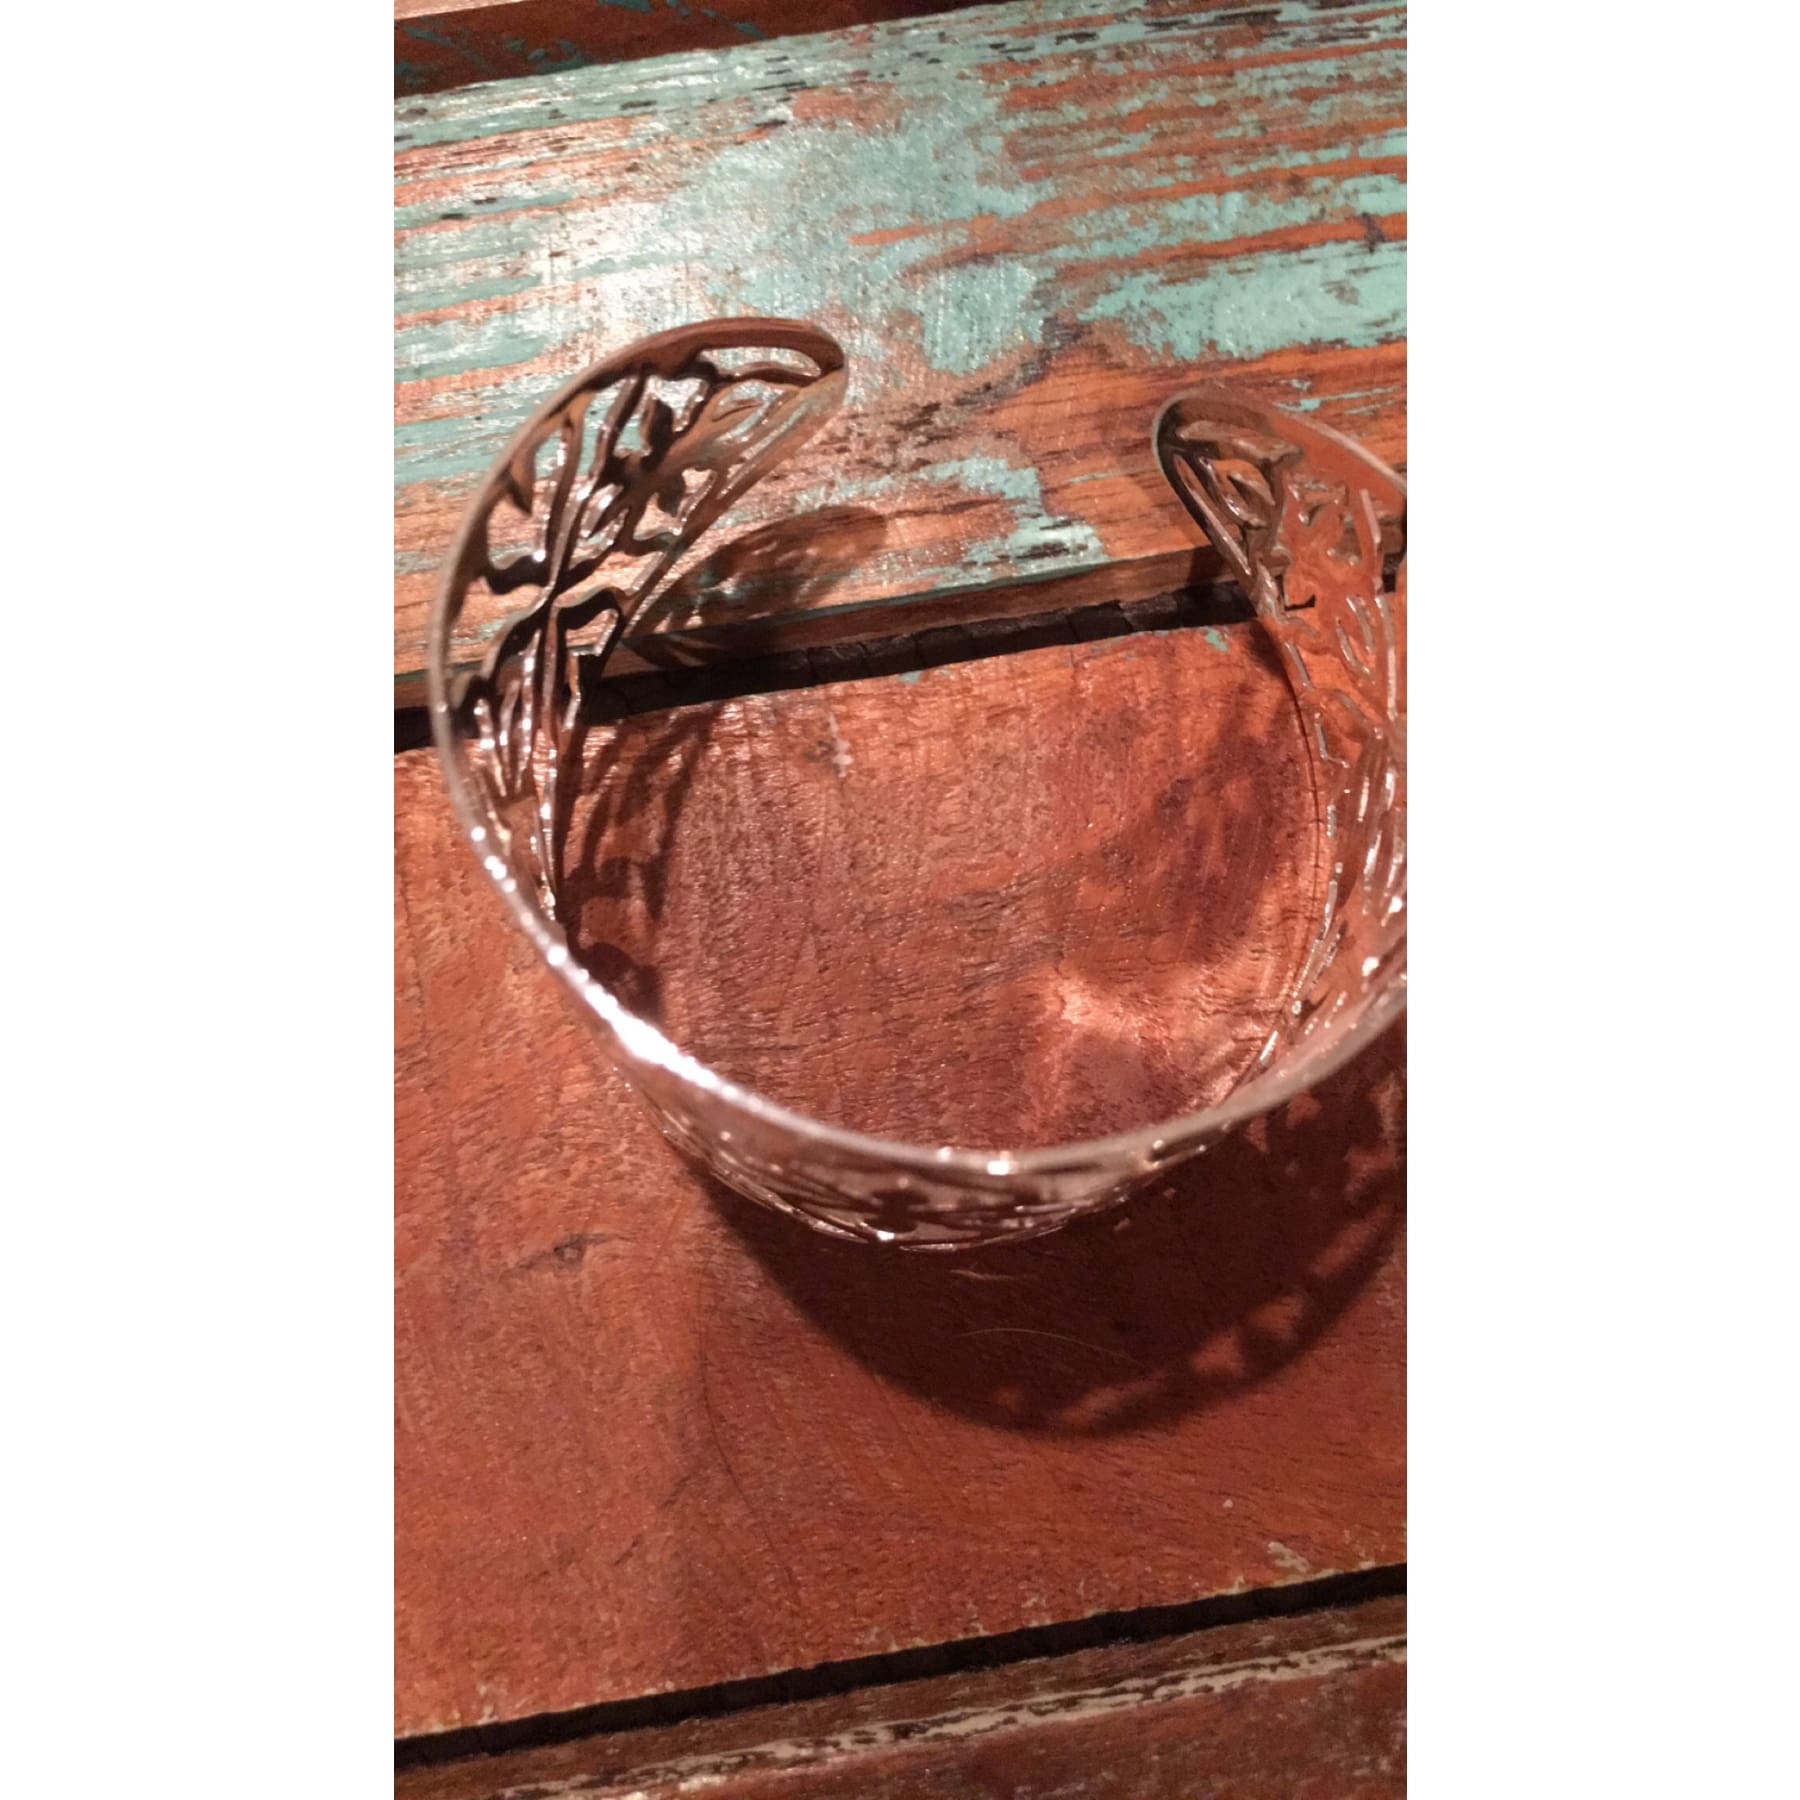 Silver Cuff Bracelet With AB Concho Pendant,Bracelets - Dirt Road Divas Boutique